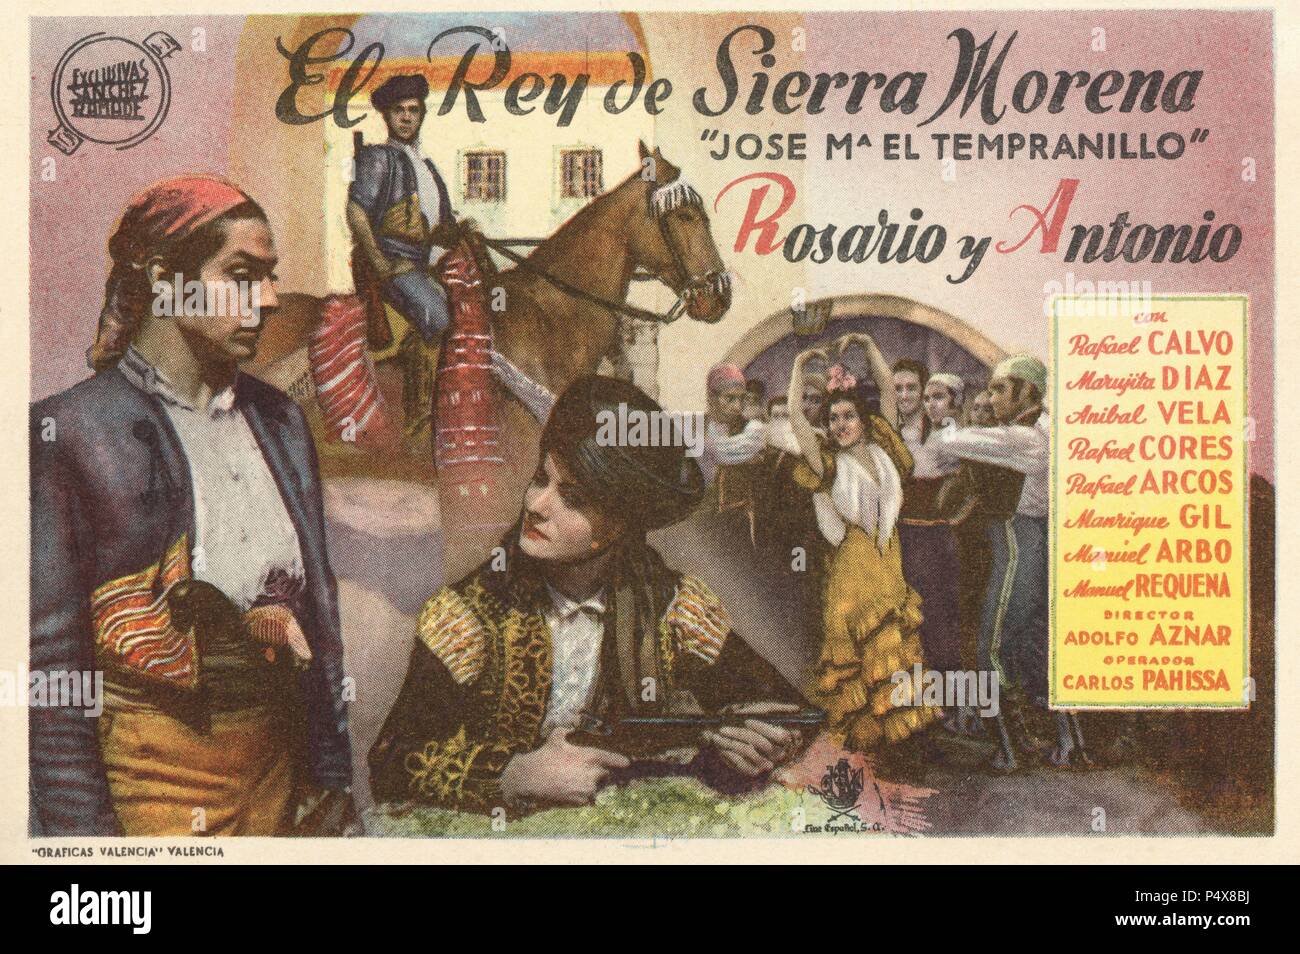 Cartel de la película El Rey de Sierra Morena, con Rosario y Antonio, dirigida por Adolfo Aznar. España, 1942. Stock Photo